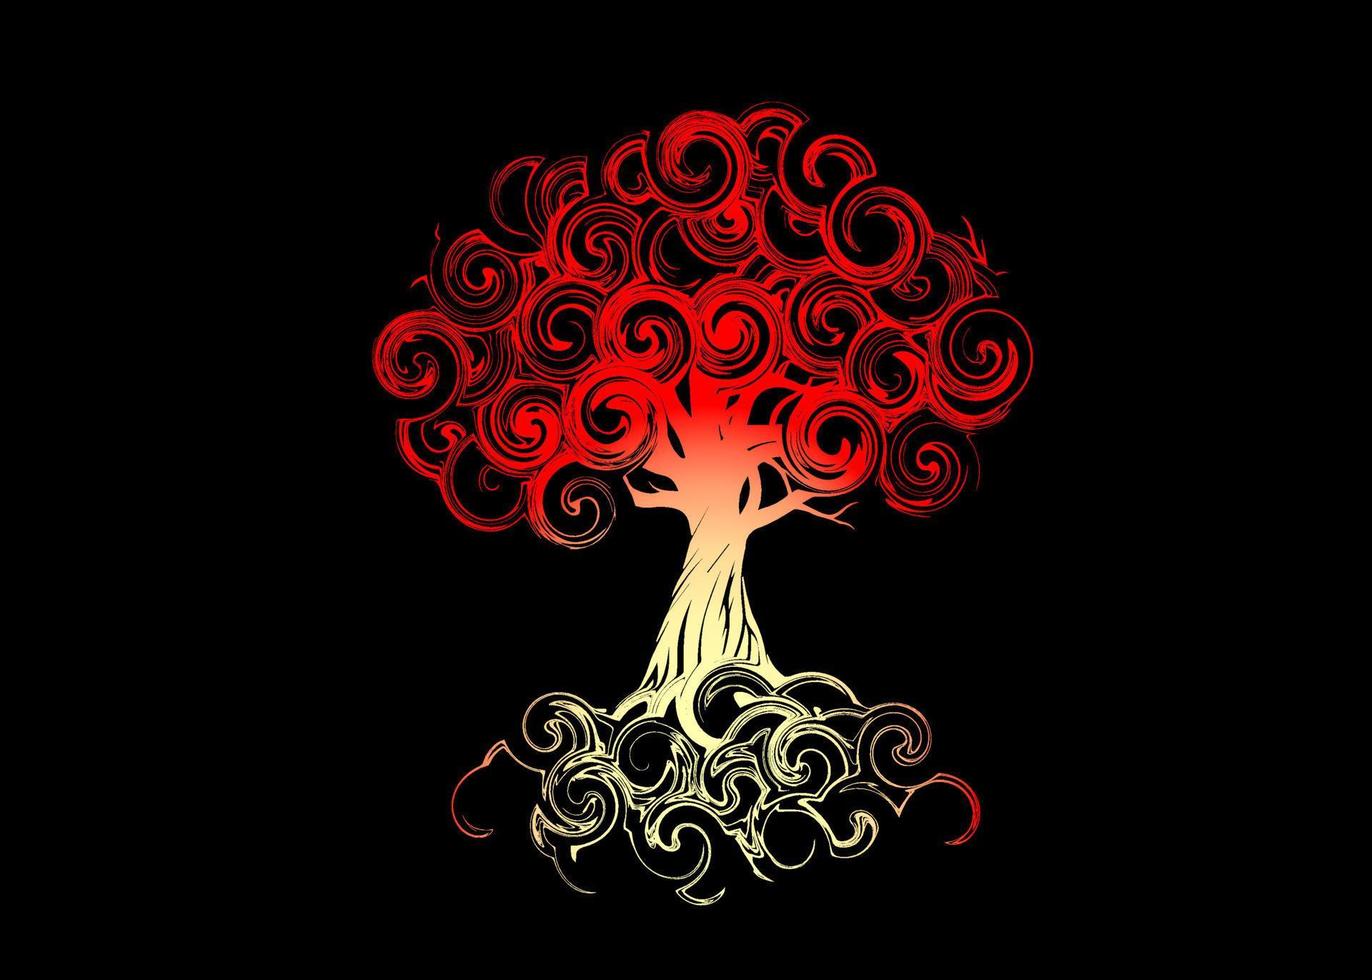 mooi abstract en kleurrijk oude magisch rood groot boom van leven silhouet behang achtergrond schilderij vector